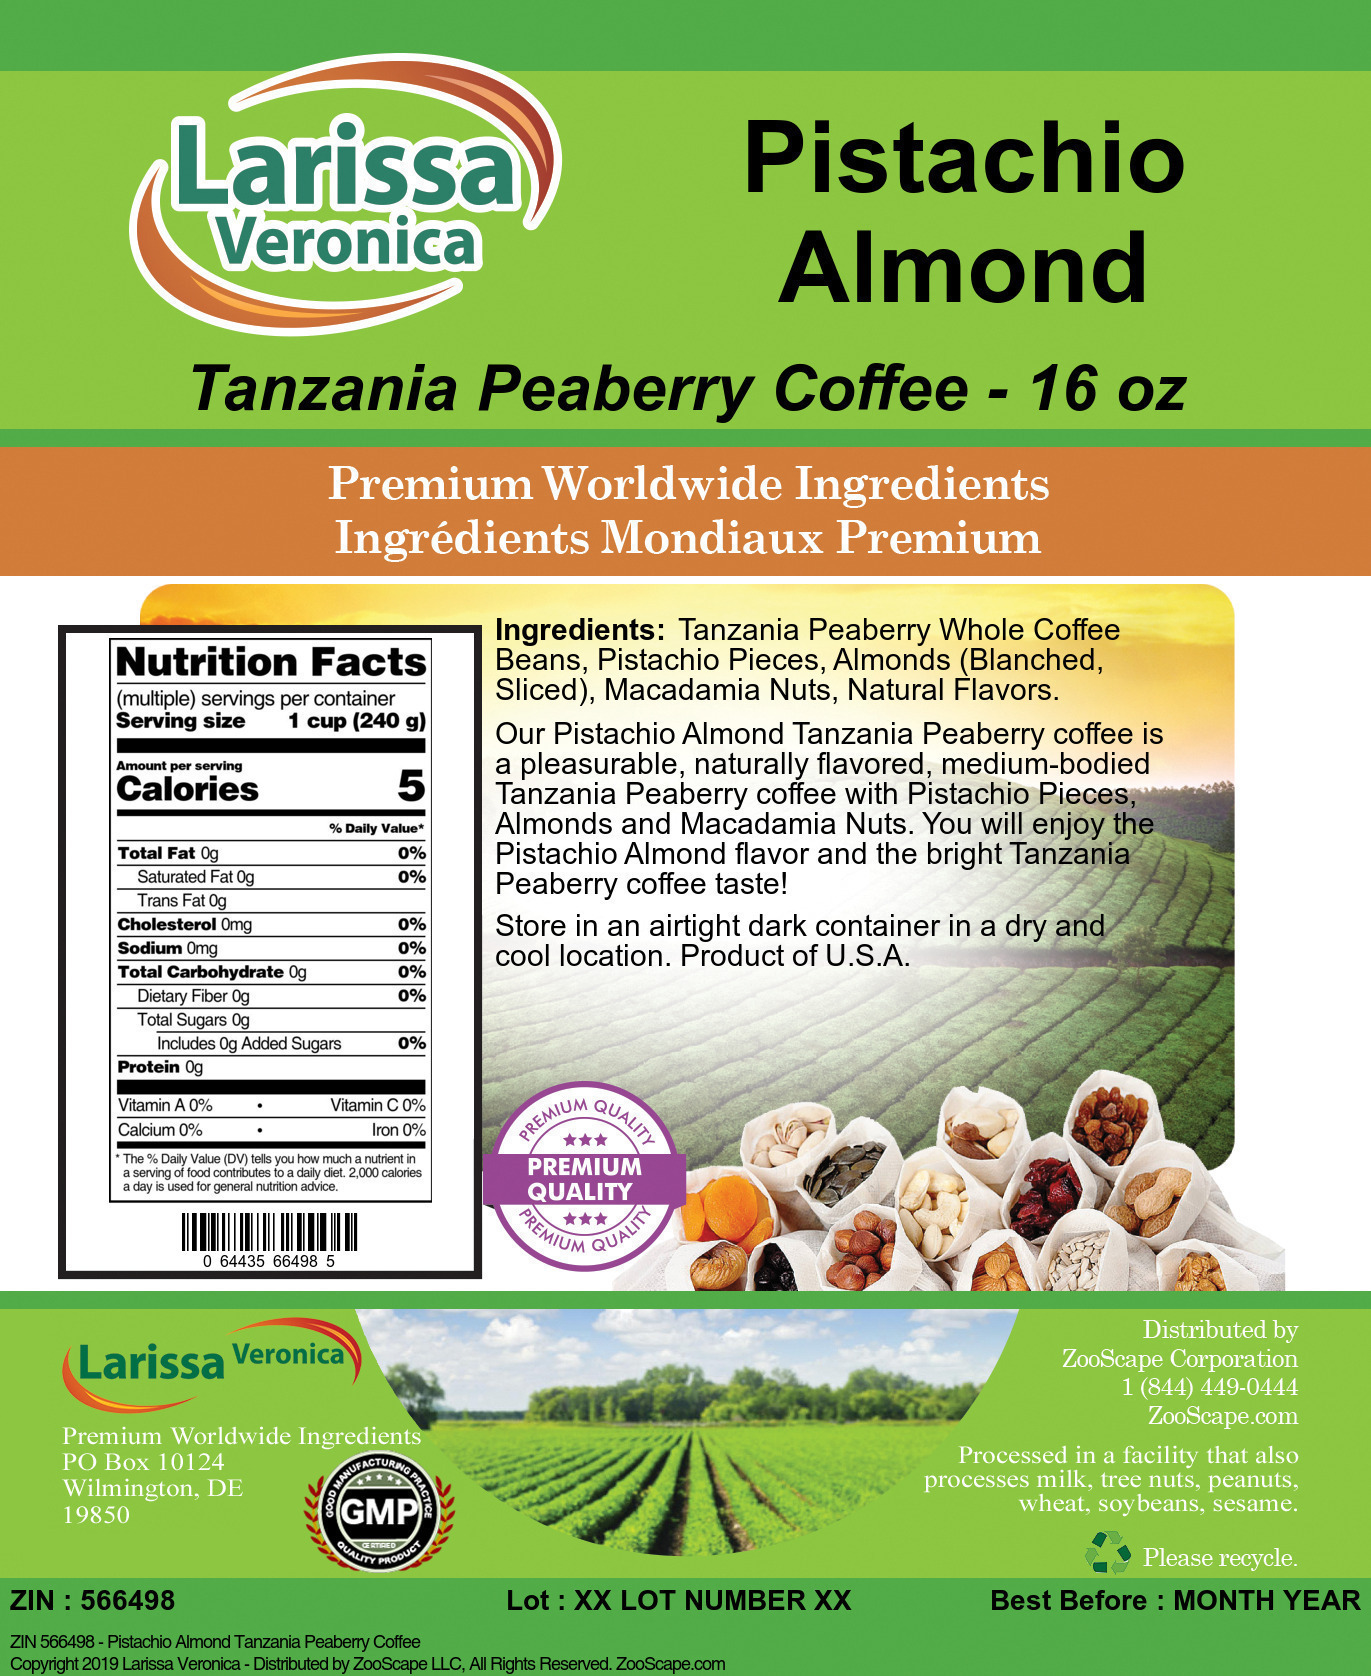 Pistachio Almond Tanzania Peaberry Coffee - Label